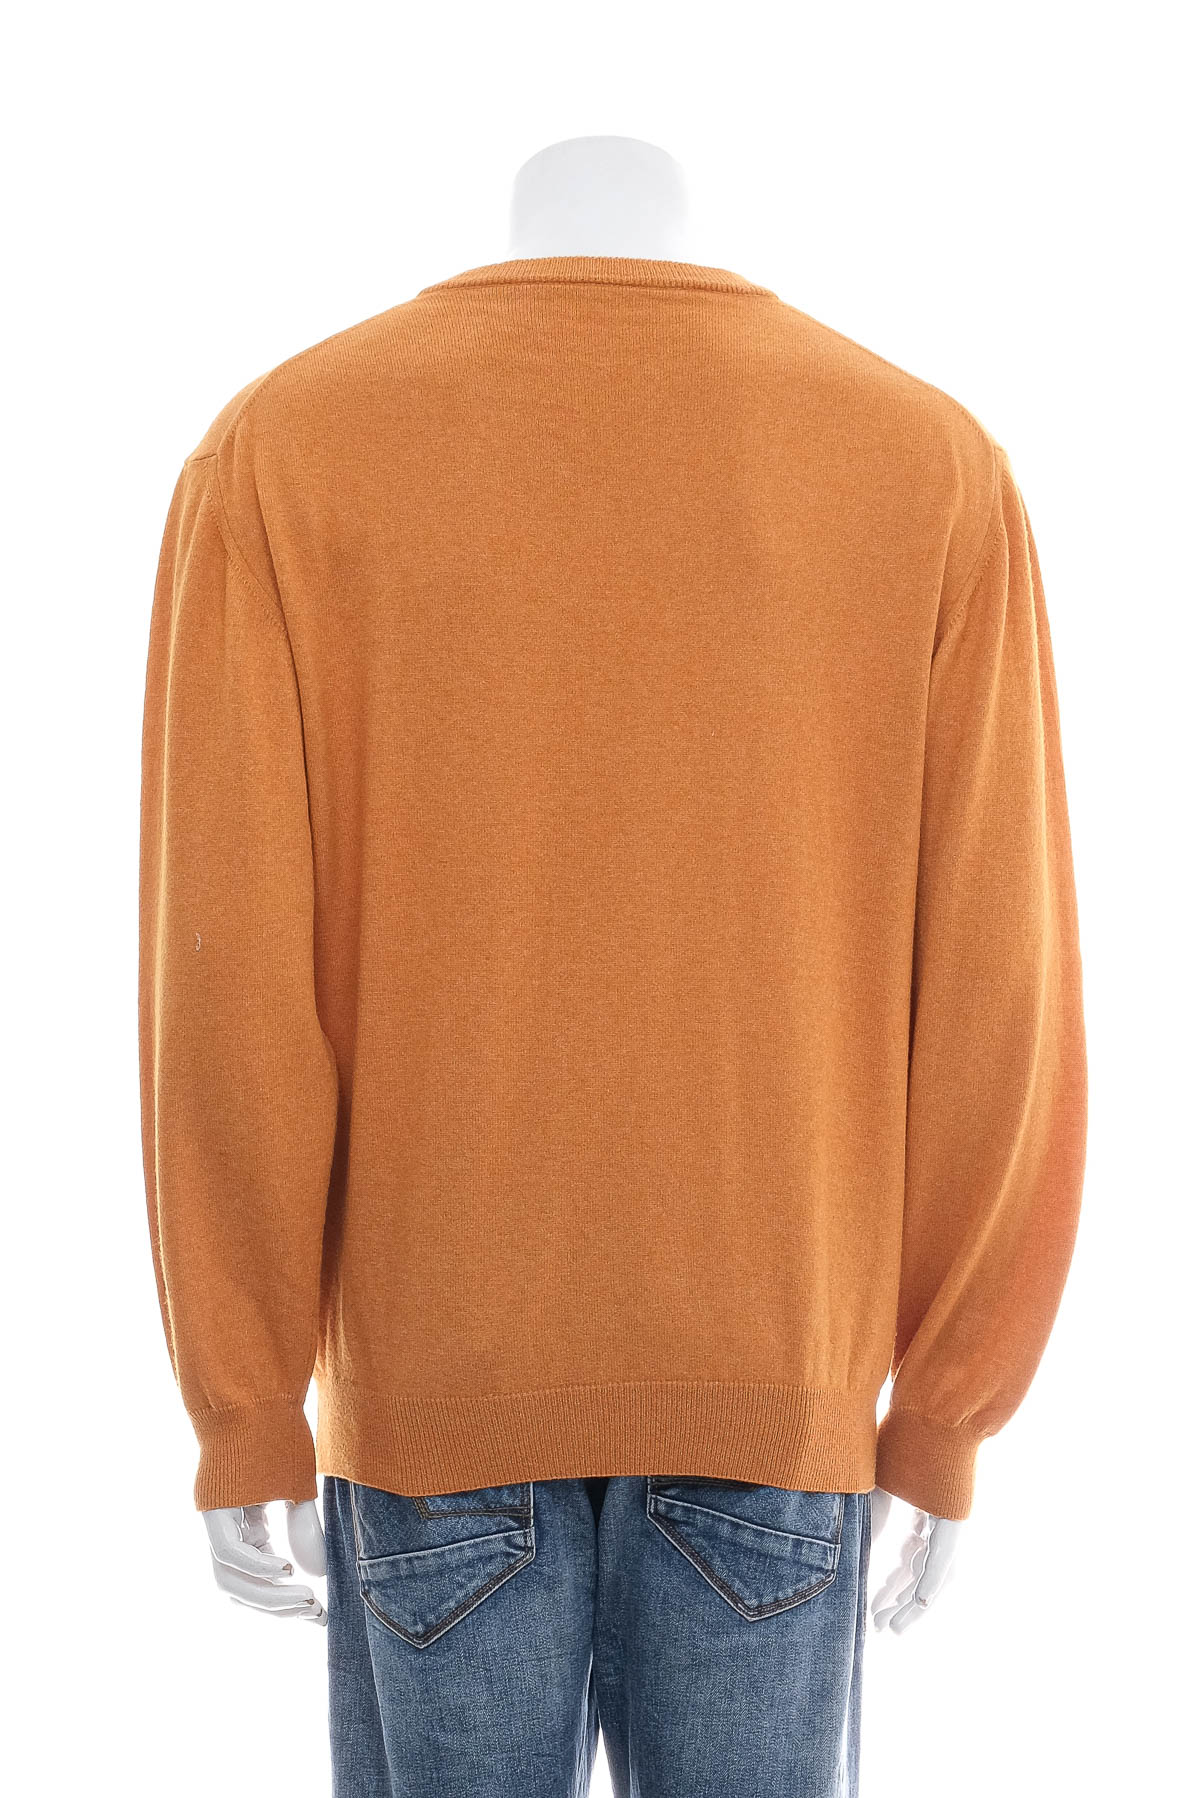 Men's sweater - K&L RUPPERT - 1